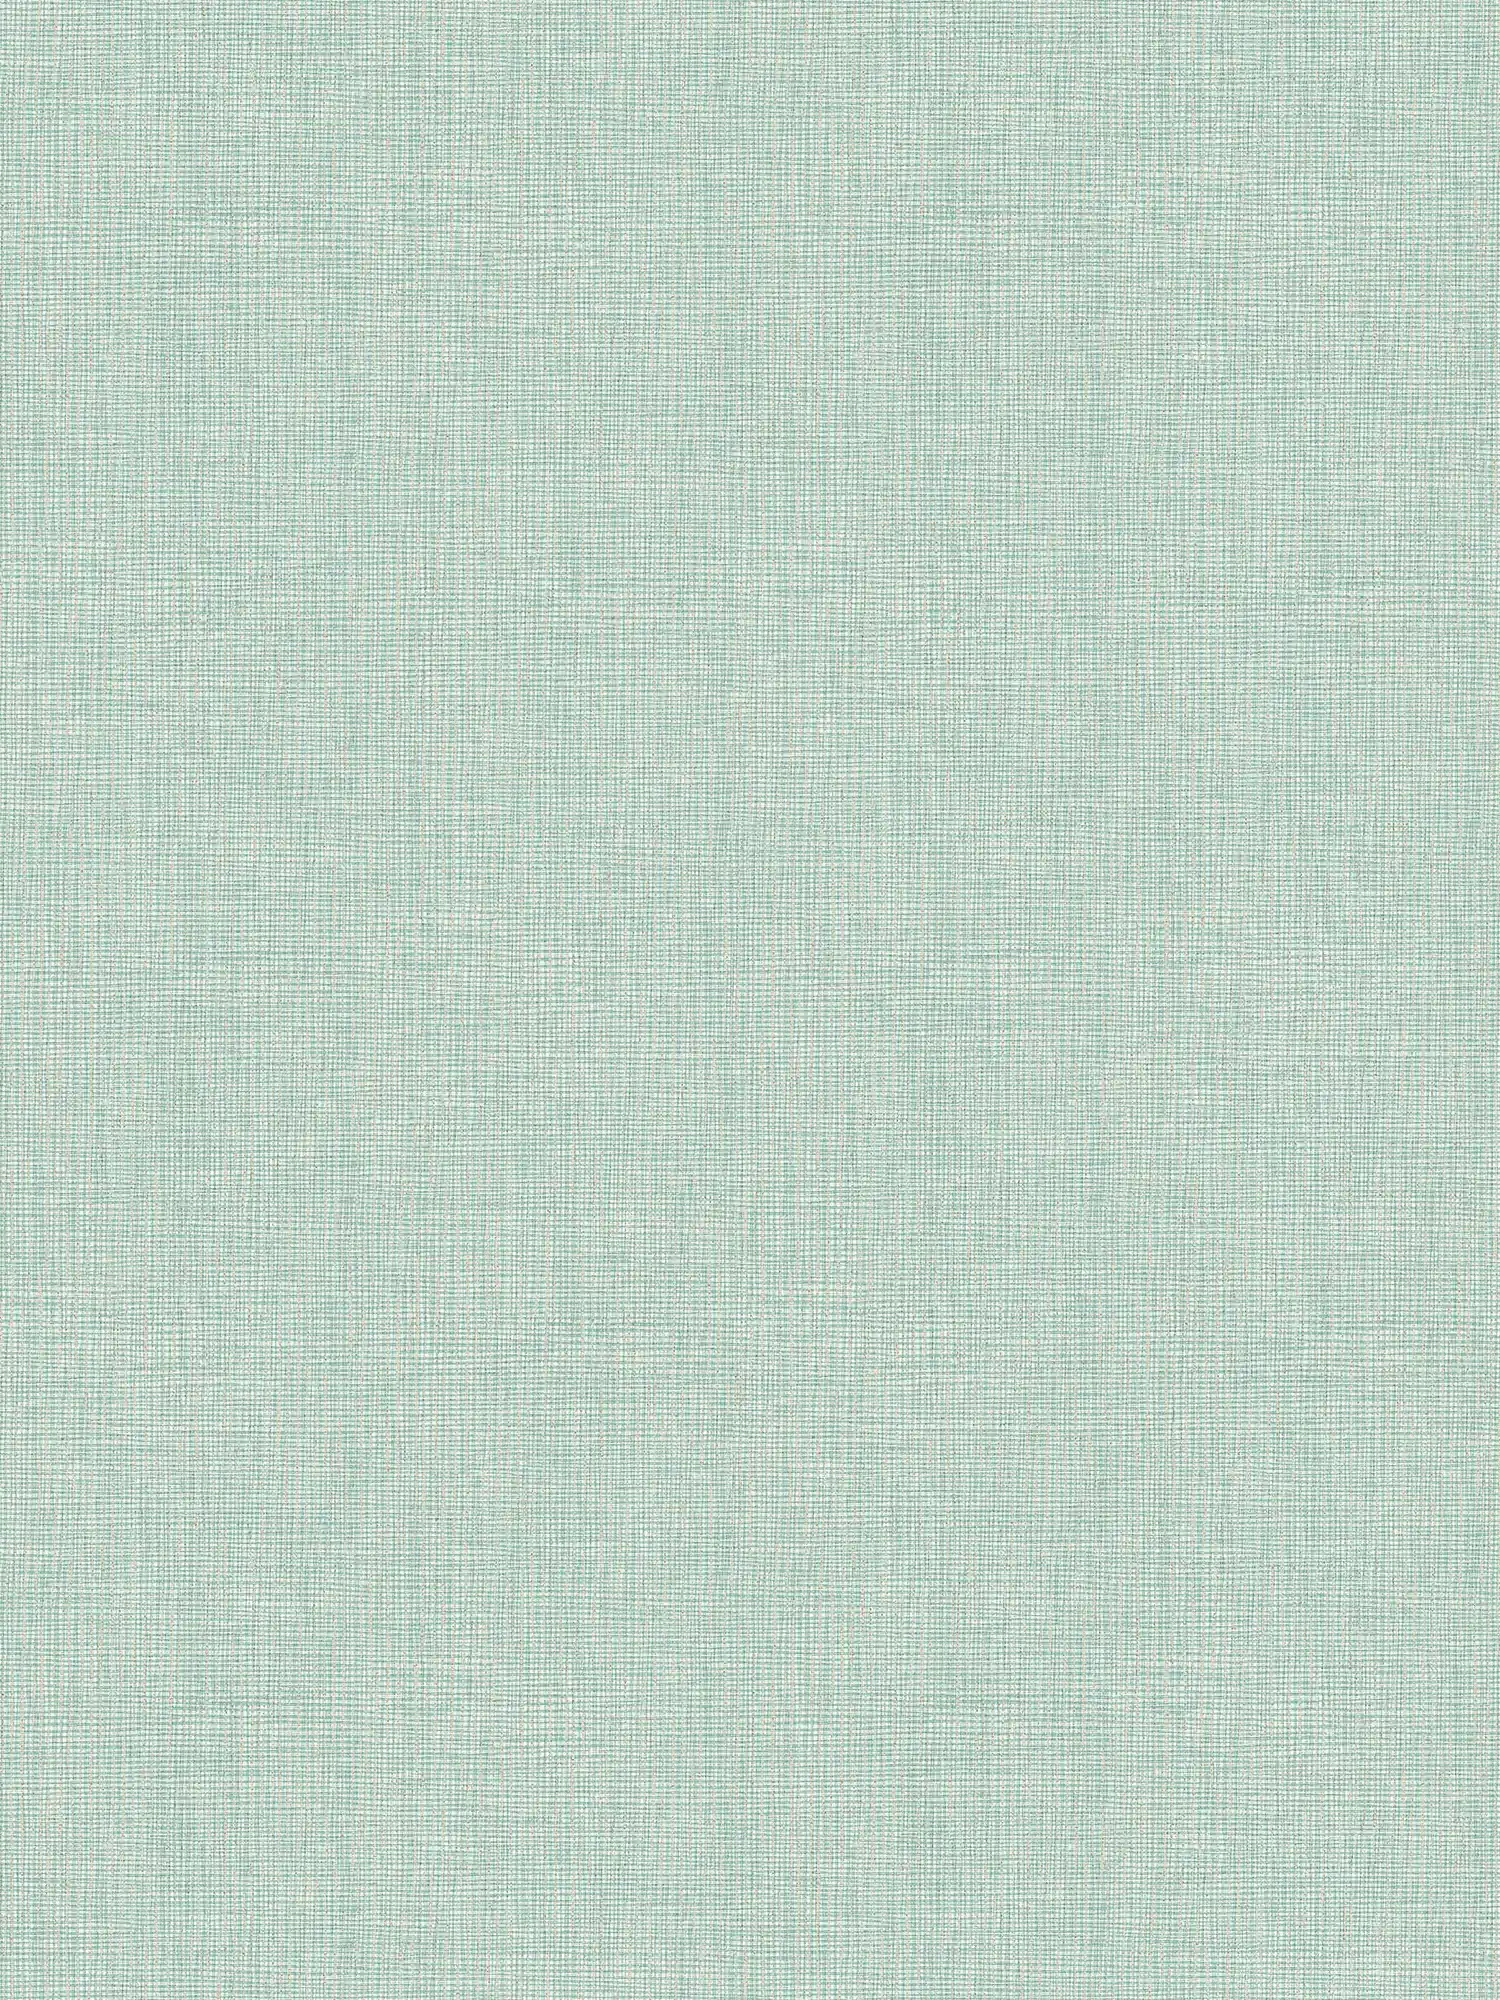 Carta da parati tessile verde chiaro con dettagli dorati - blu, grigio, argento
